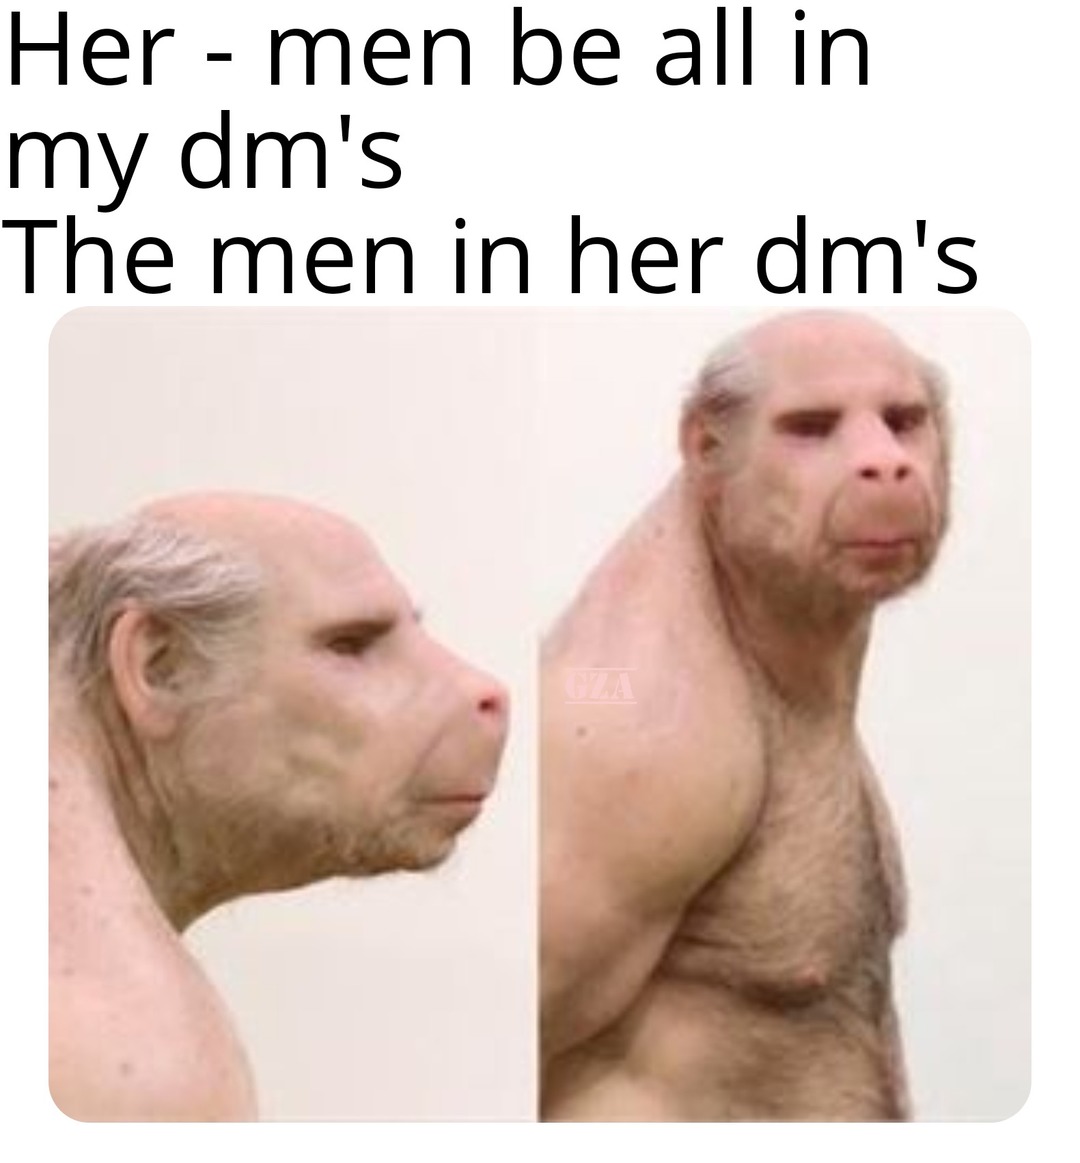 Men in dm's - meme